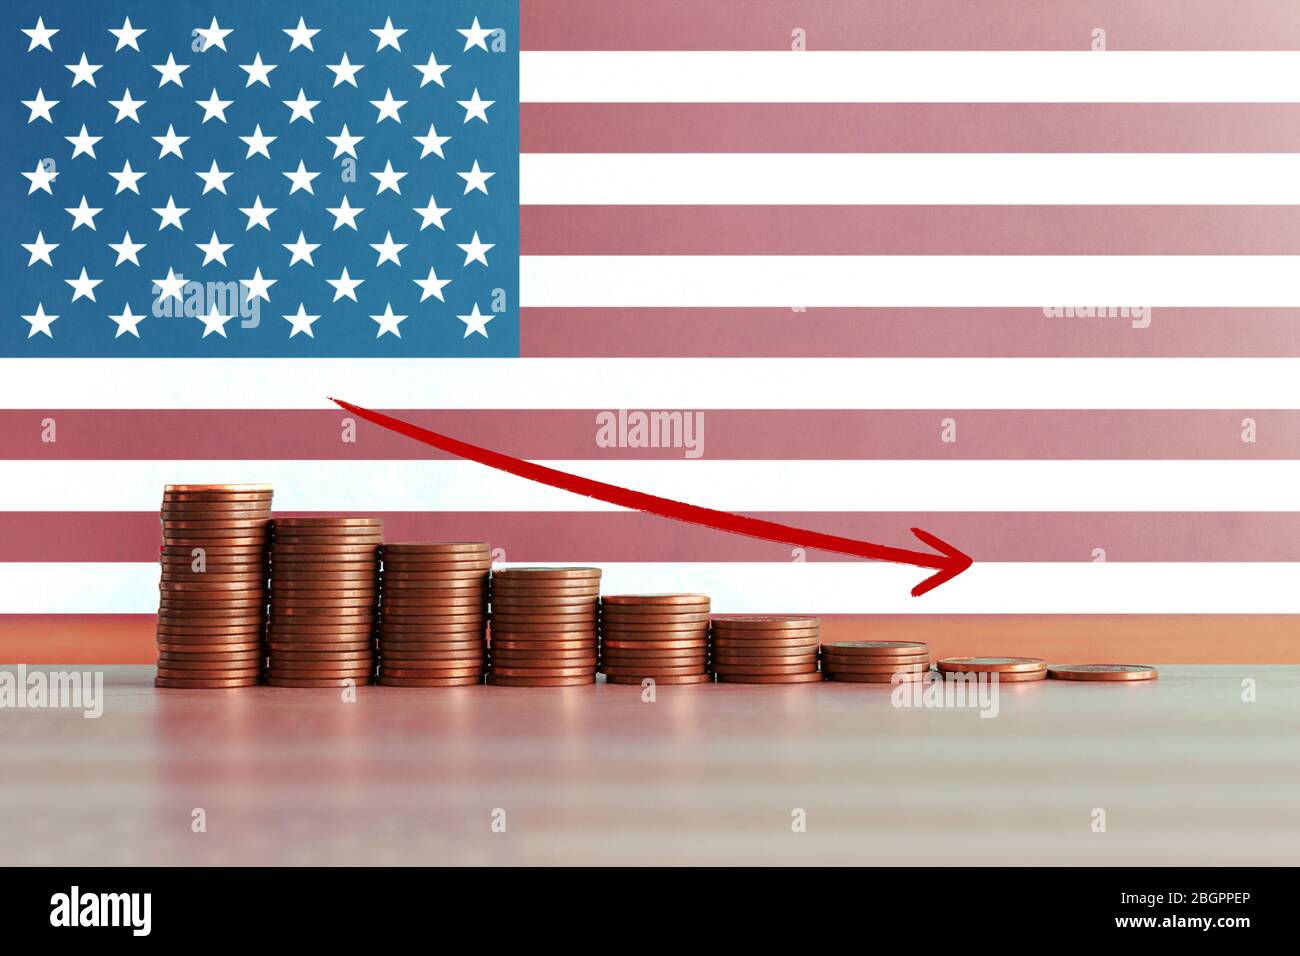 Stock Foto von Wirtschaftskrise und Rezession Konzept in den USA mit absteigenden Treppe von Münzen und Flagge im Hintergrund Stockfoto